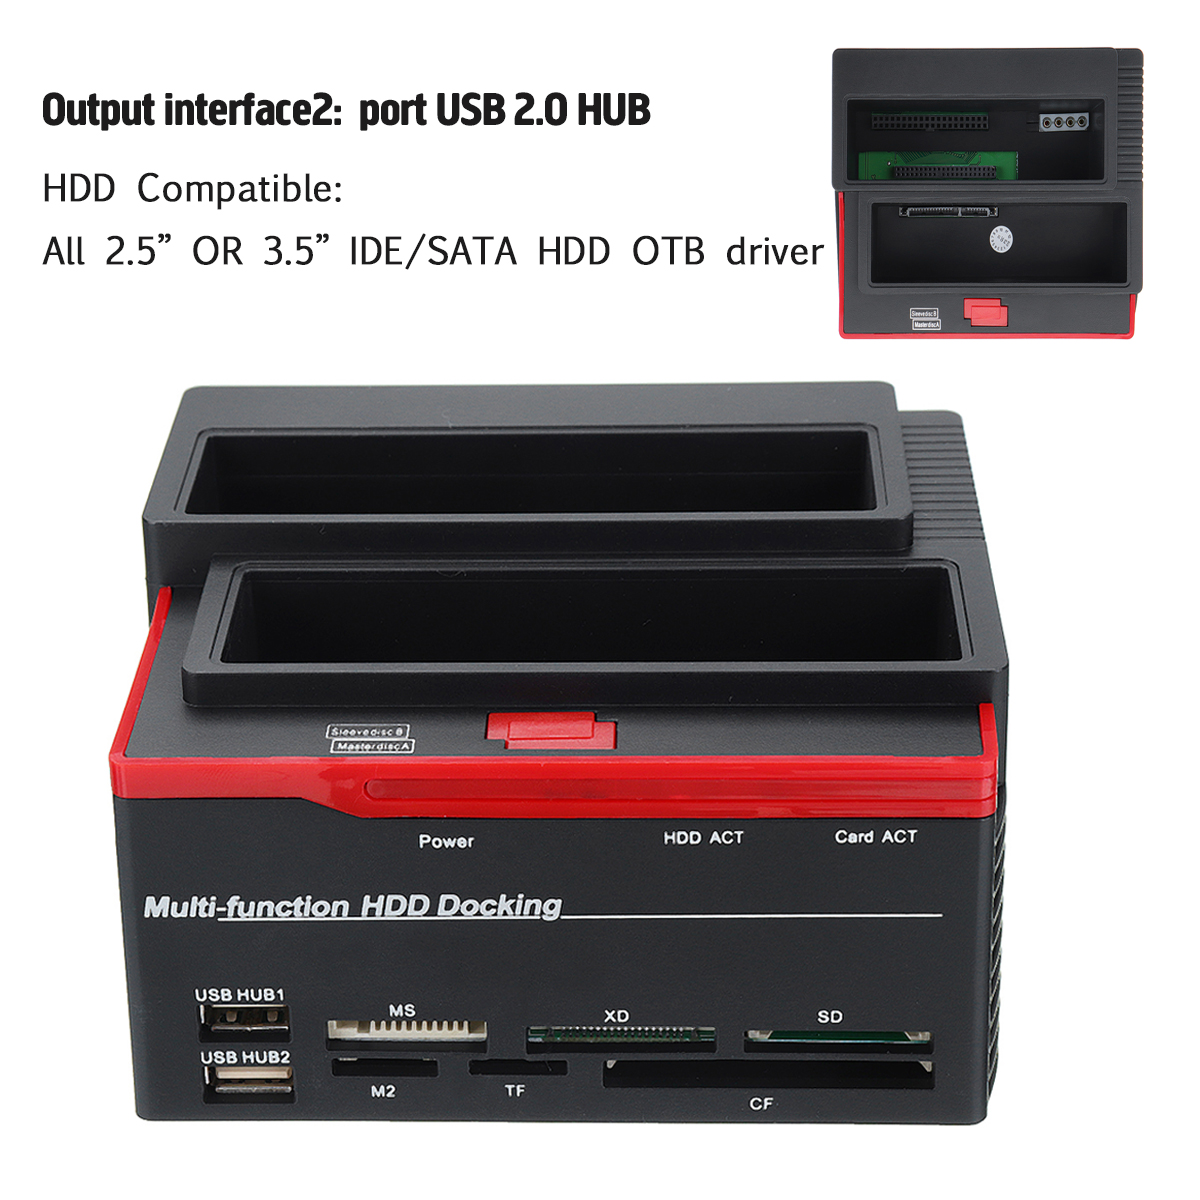 HDD DOCKING STATION TRIO TRIPLE HDD 2SATA+1IDE HDD DOCKING CARD READER USB 3.0 893U3